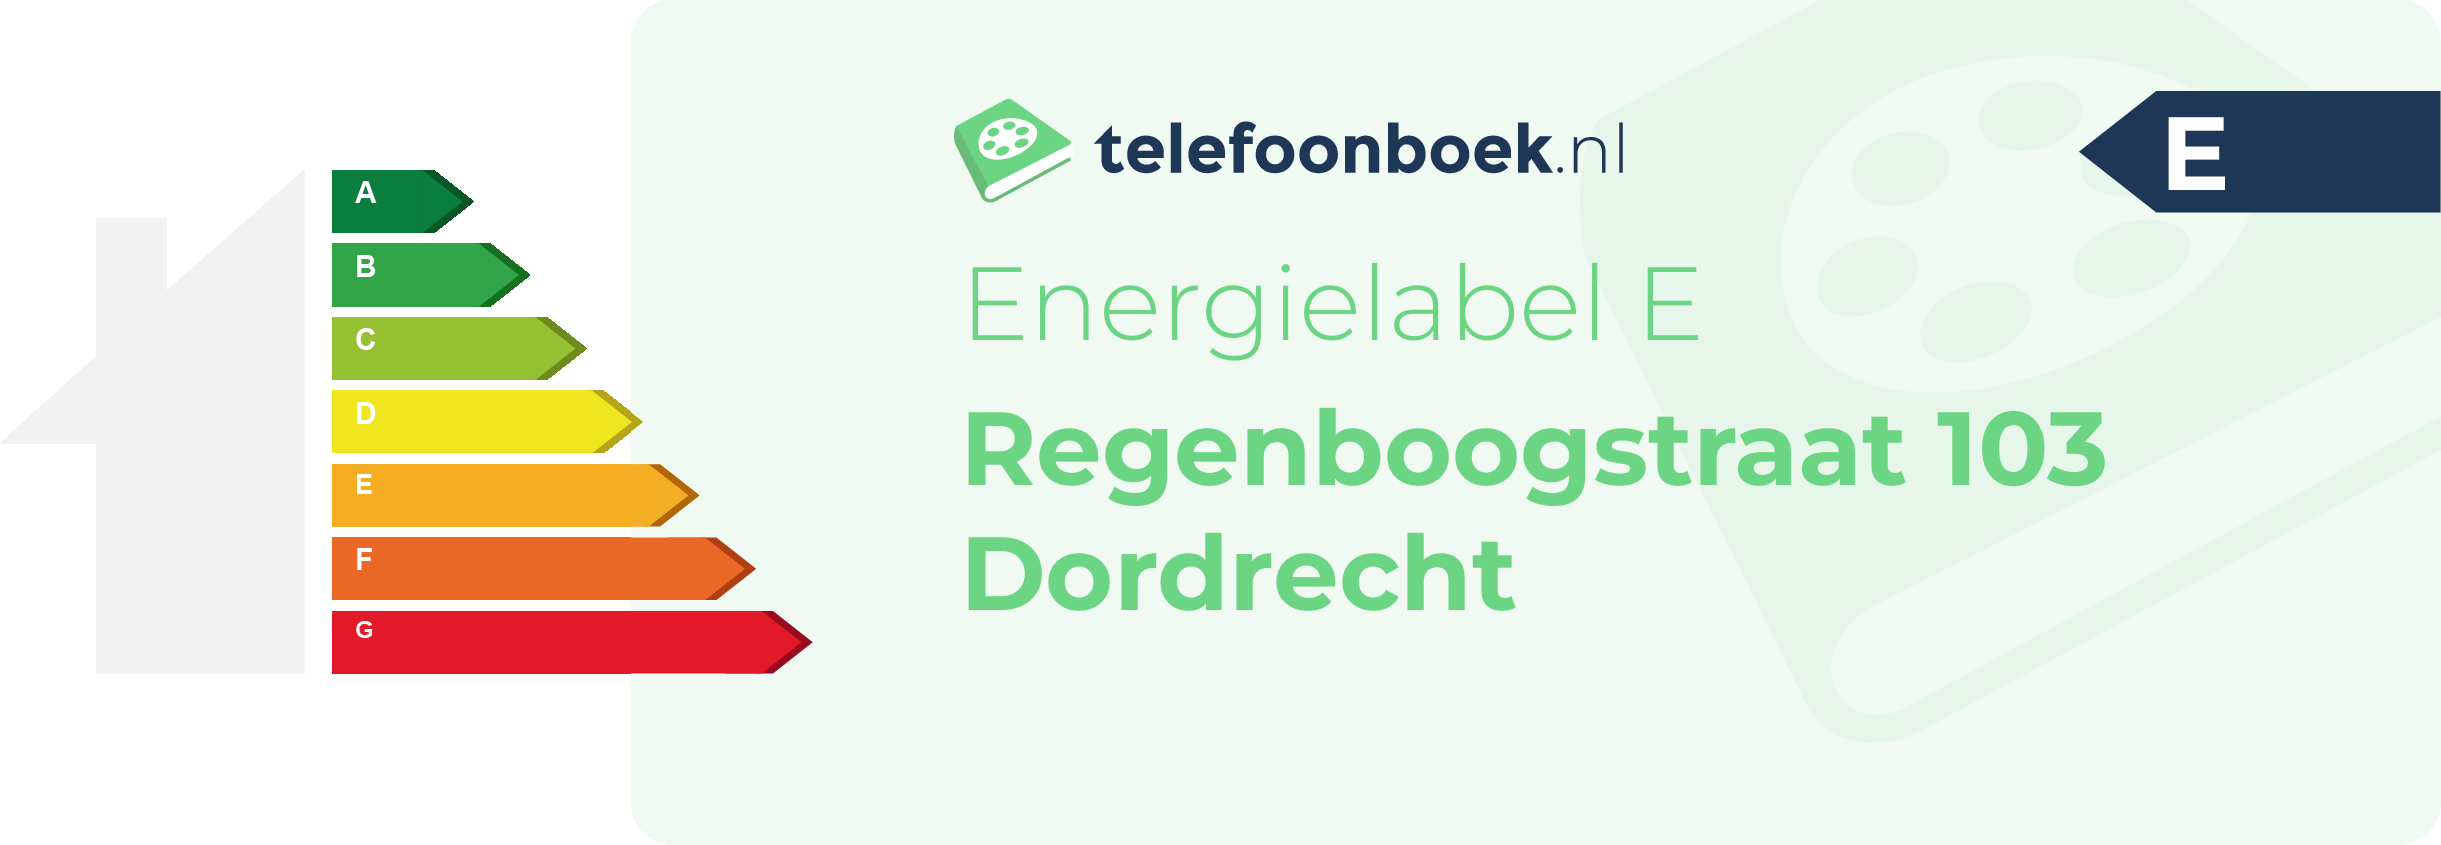 Energielabel Regenboogstraat 103 Dordrecht